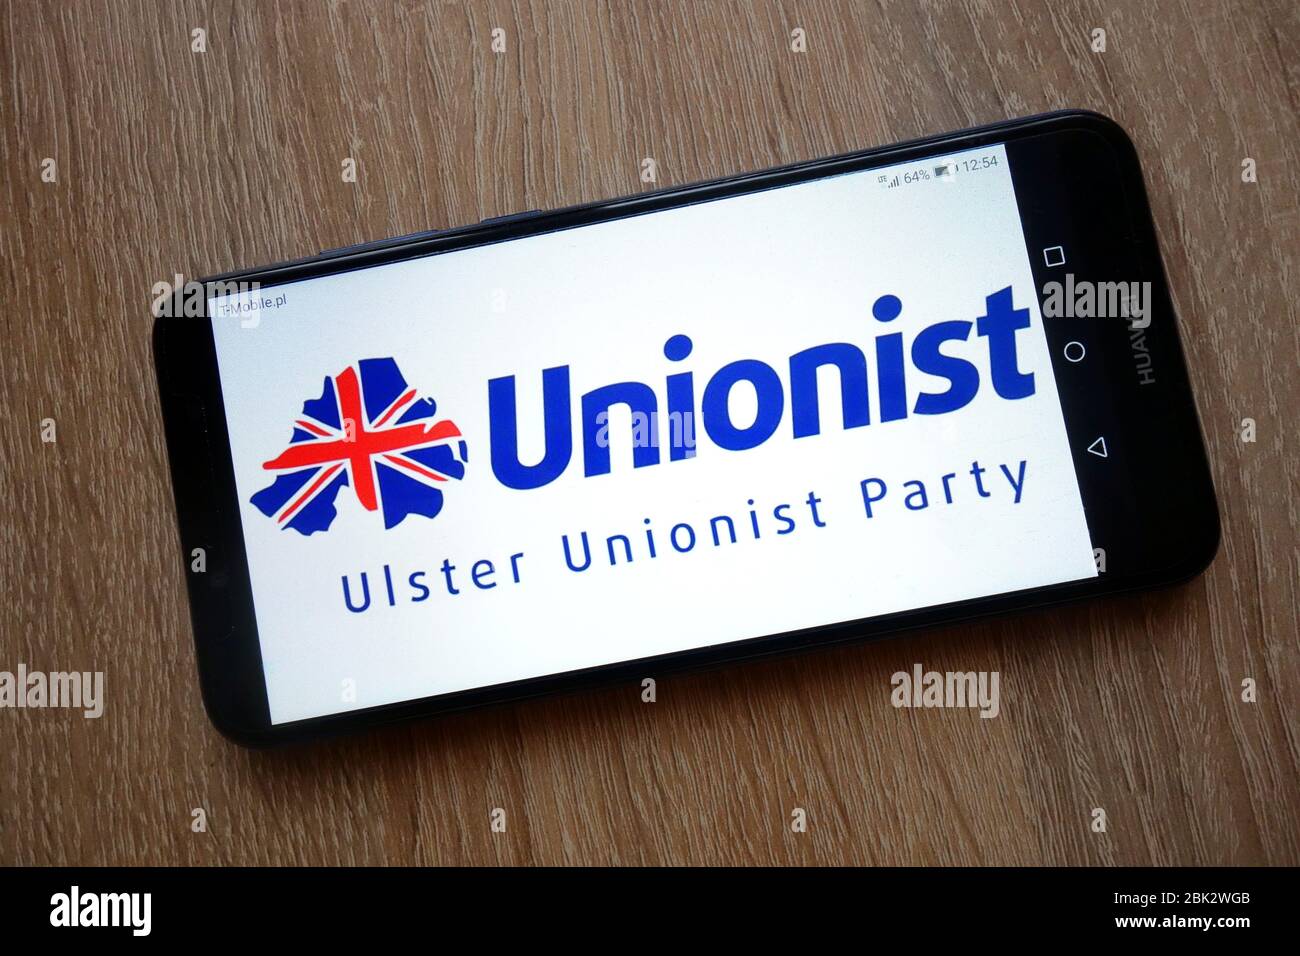 El logotipo de Ulster Unionist Party (UUP) se muestra en el smartphone Foto de stock